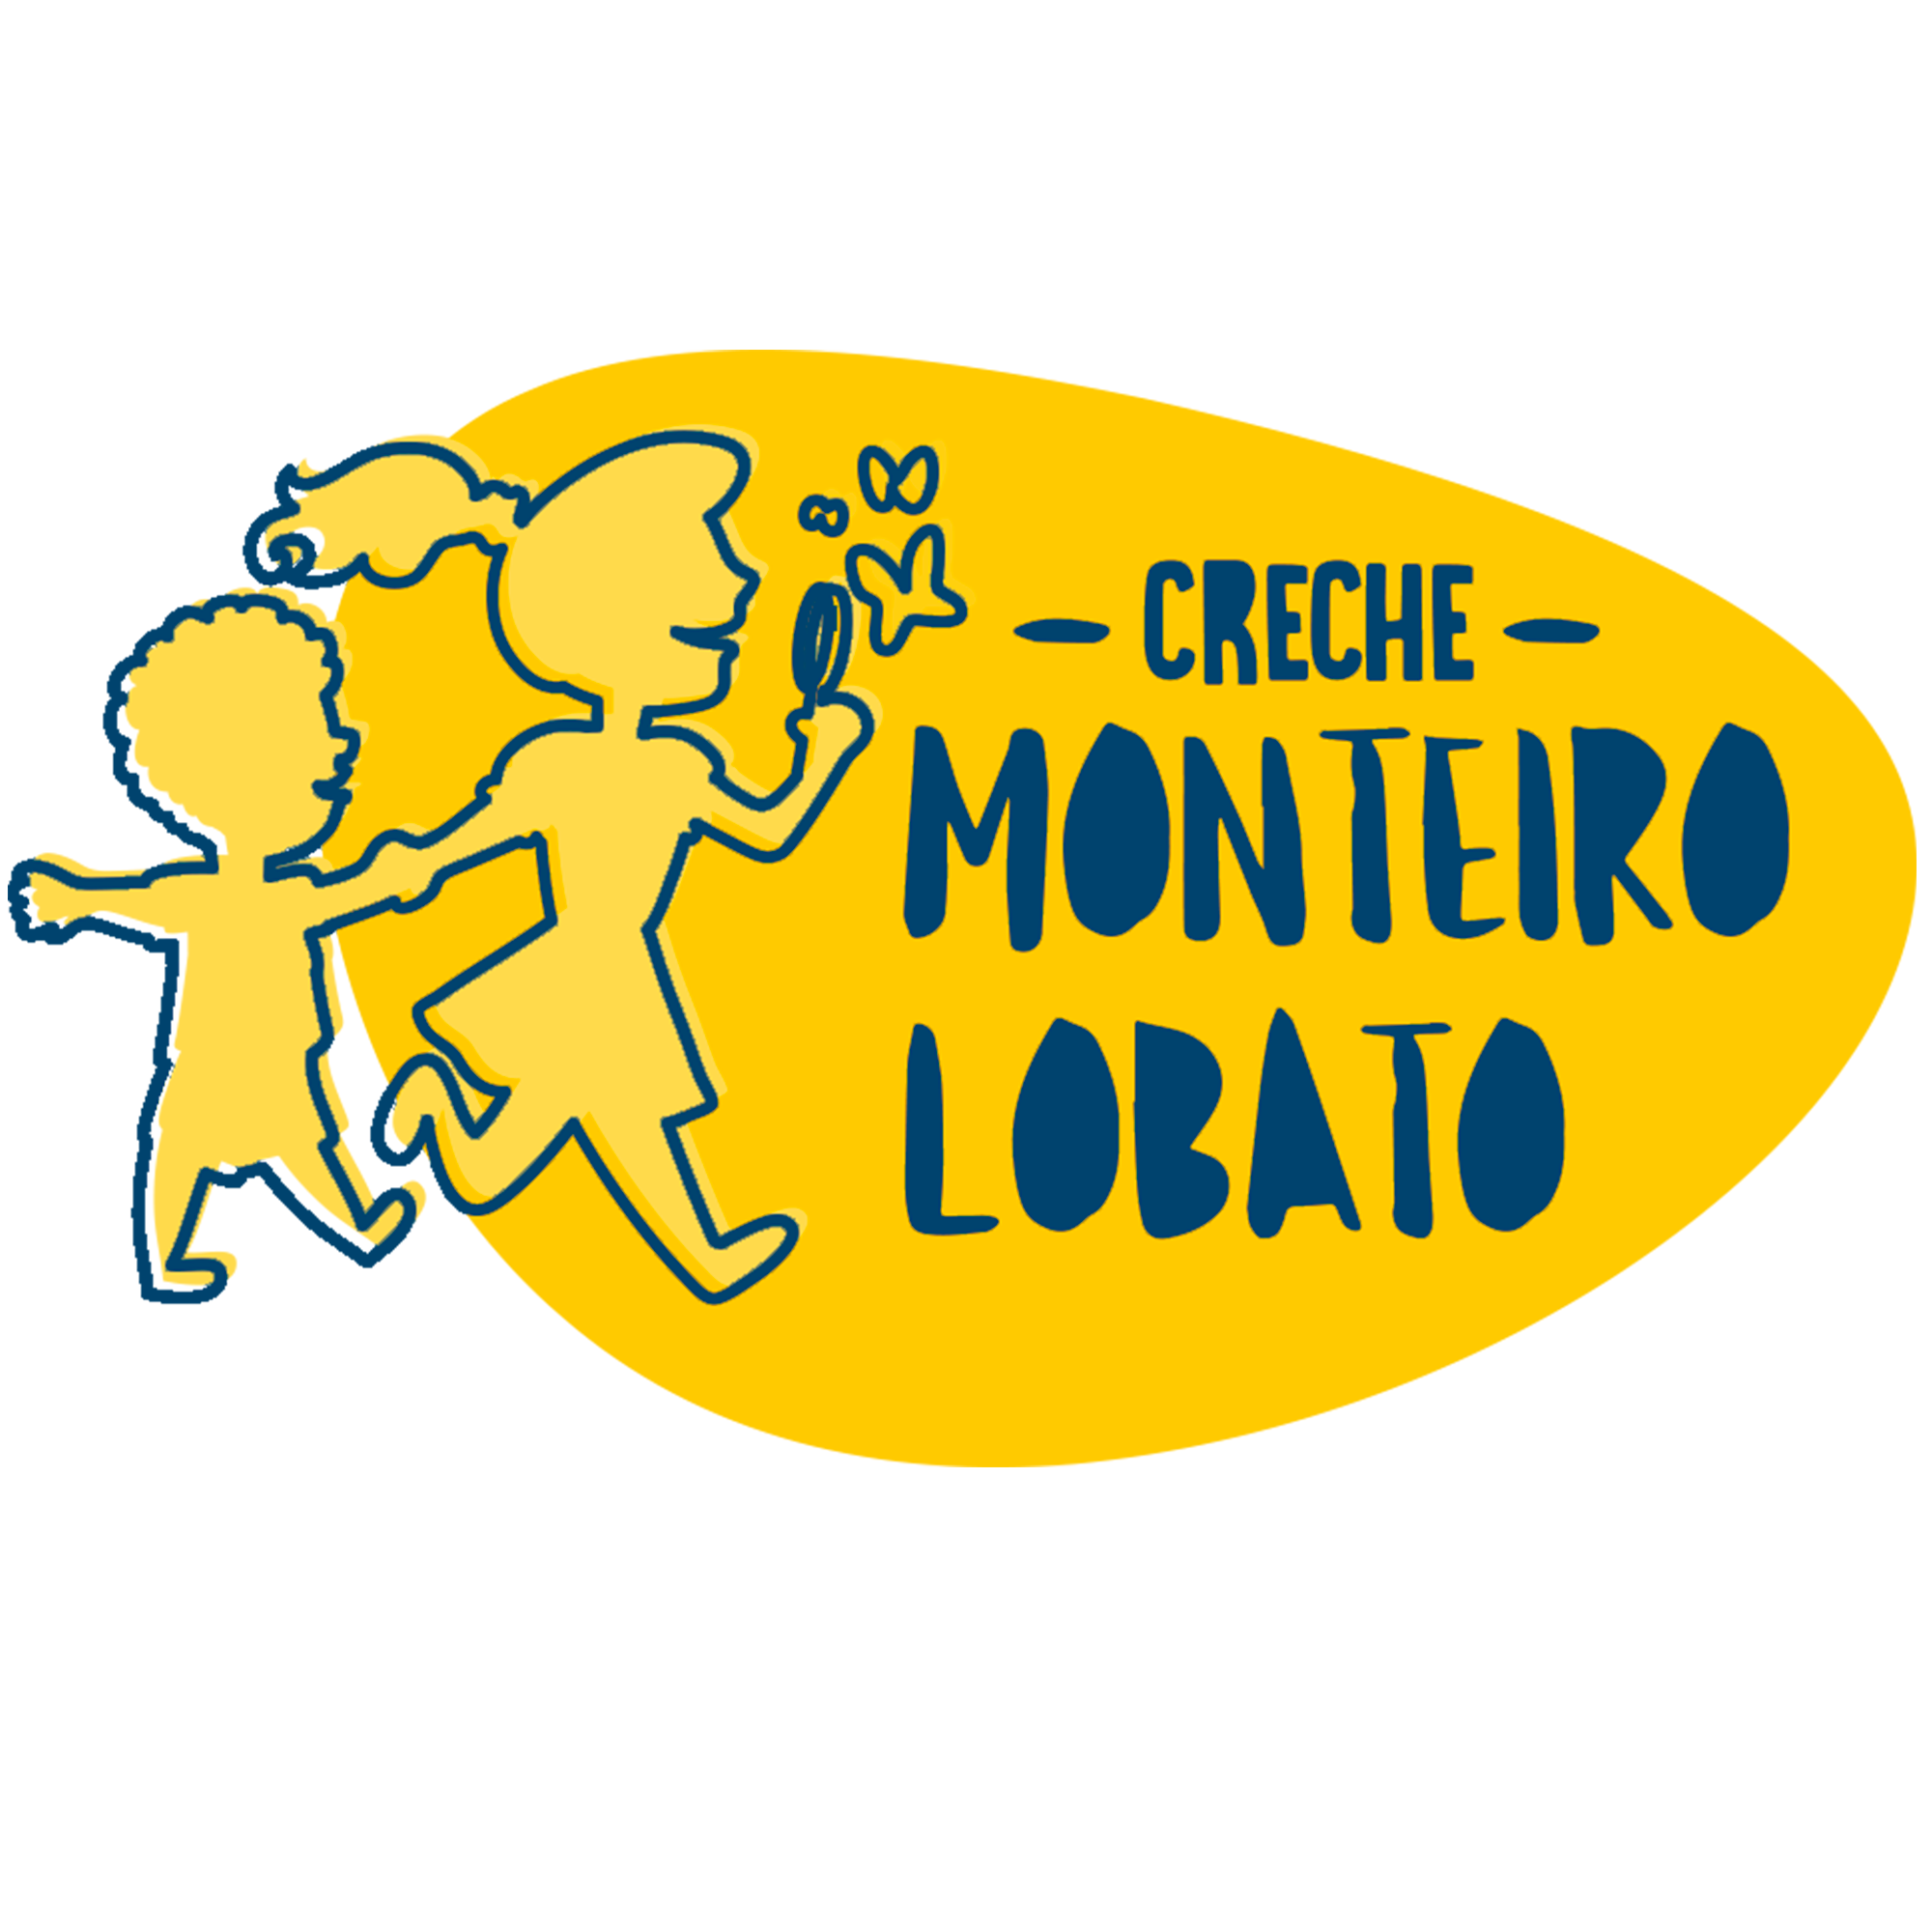 Creche Monteiro Lobato - 